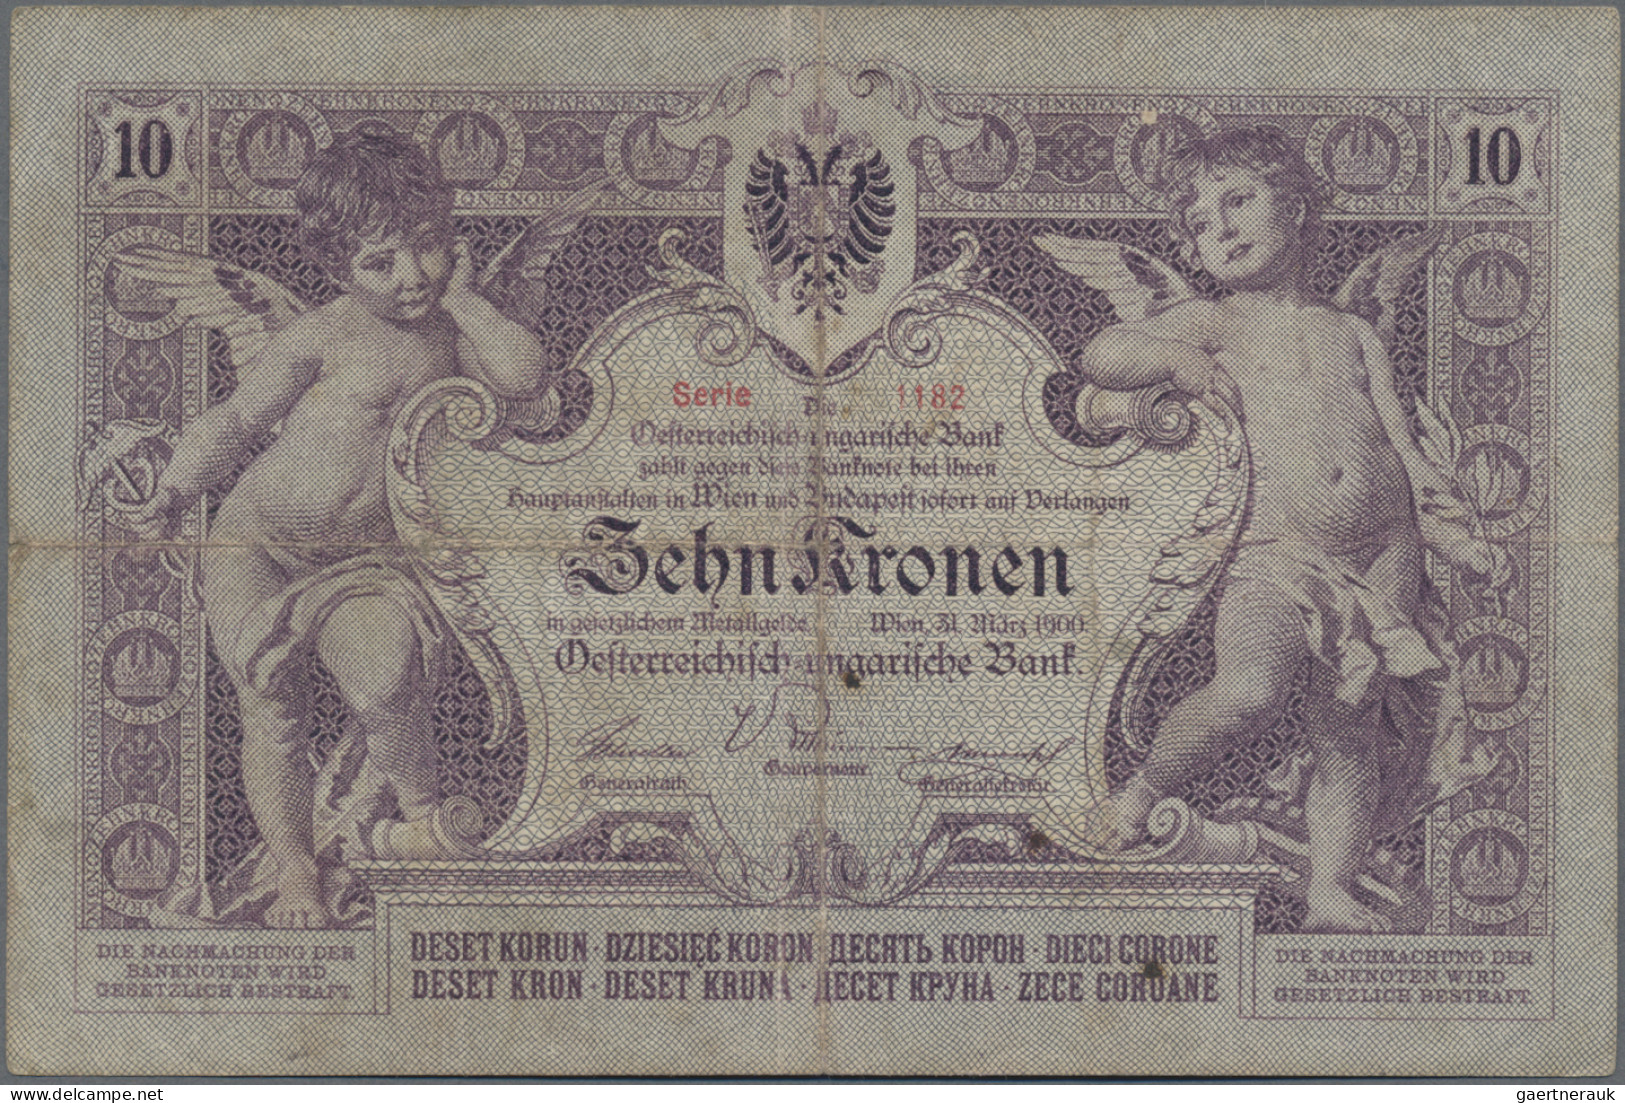 Austria: Oesterreichisch-ungarische Bank / Osztrák-magyar Bank 10 Kronen 1900, P - Austria